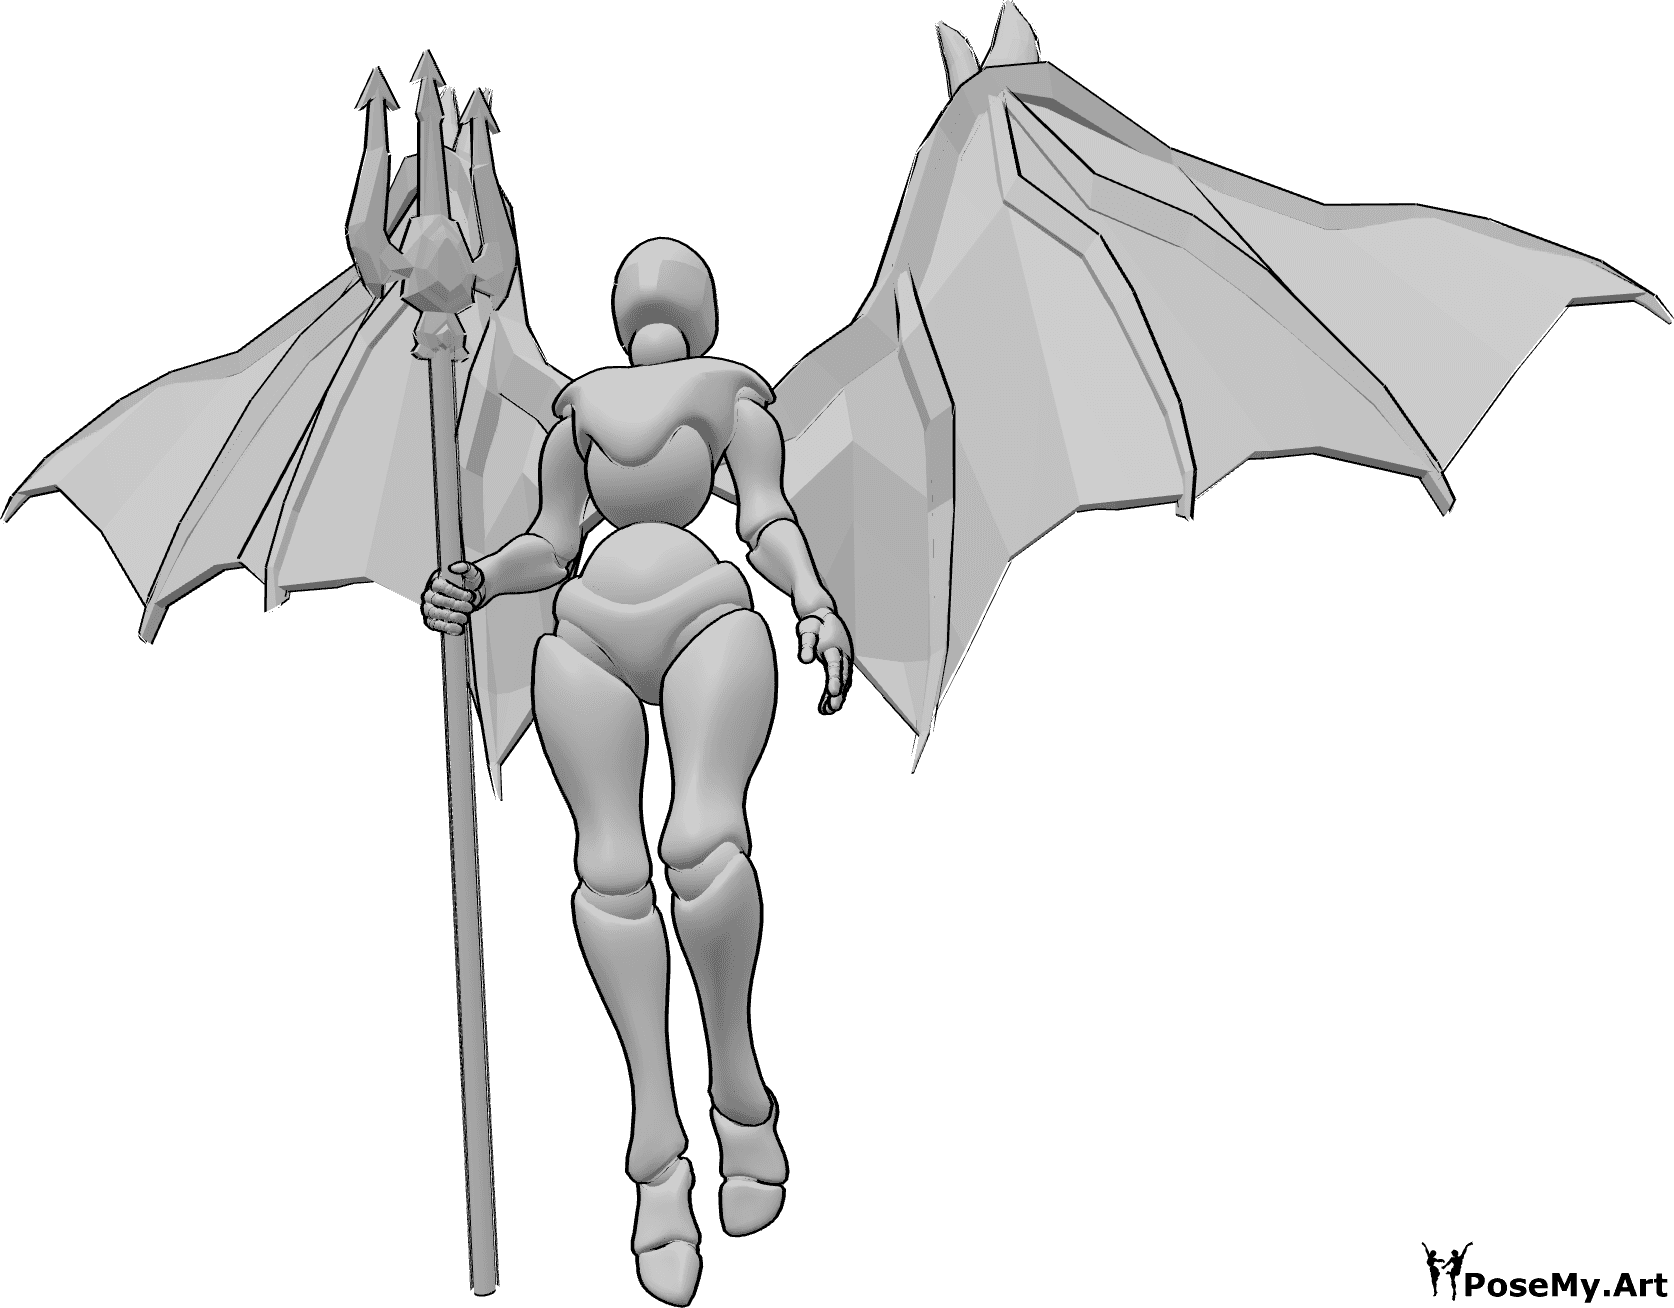 Référence des poses- Pose du démon volant - Femme aux ailes de diable volant vers le haut, tenant le trident dans sa main droite et regardant vers le haut